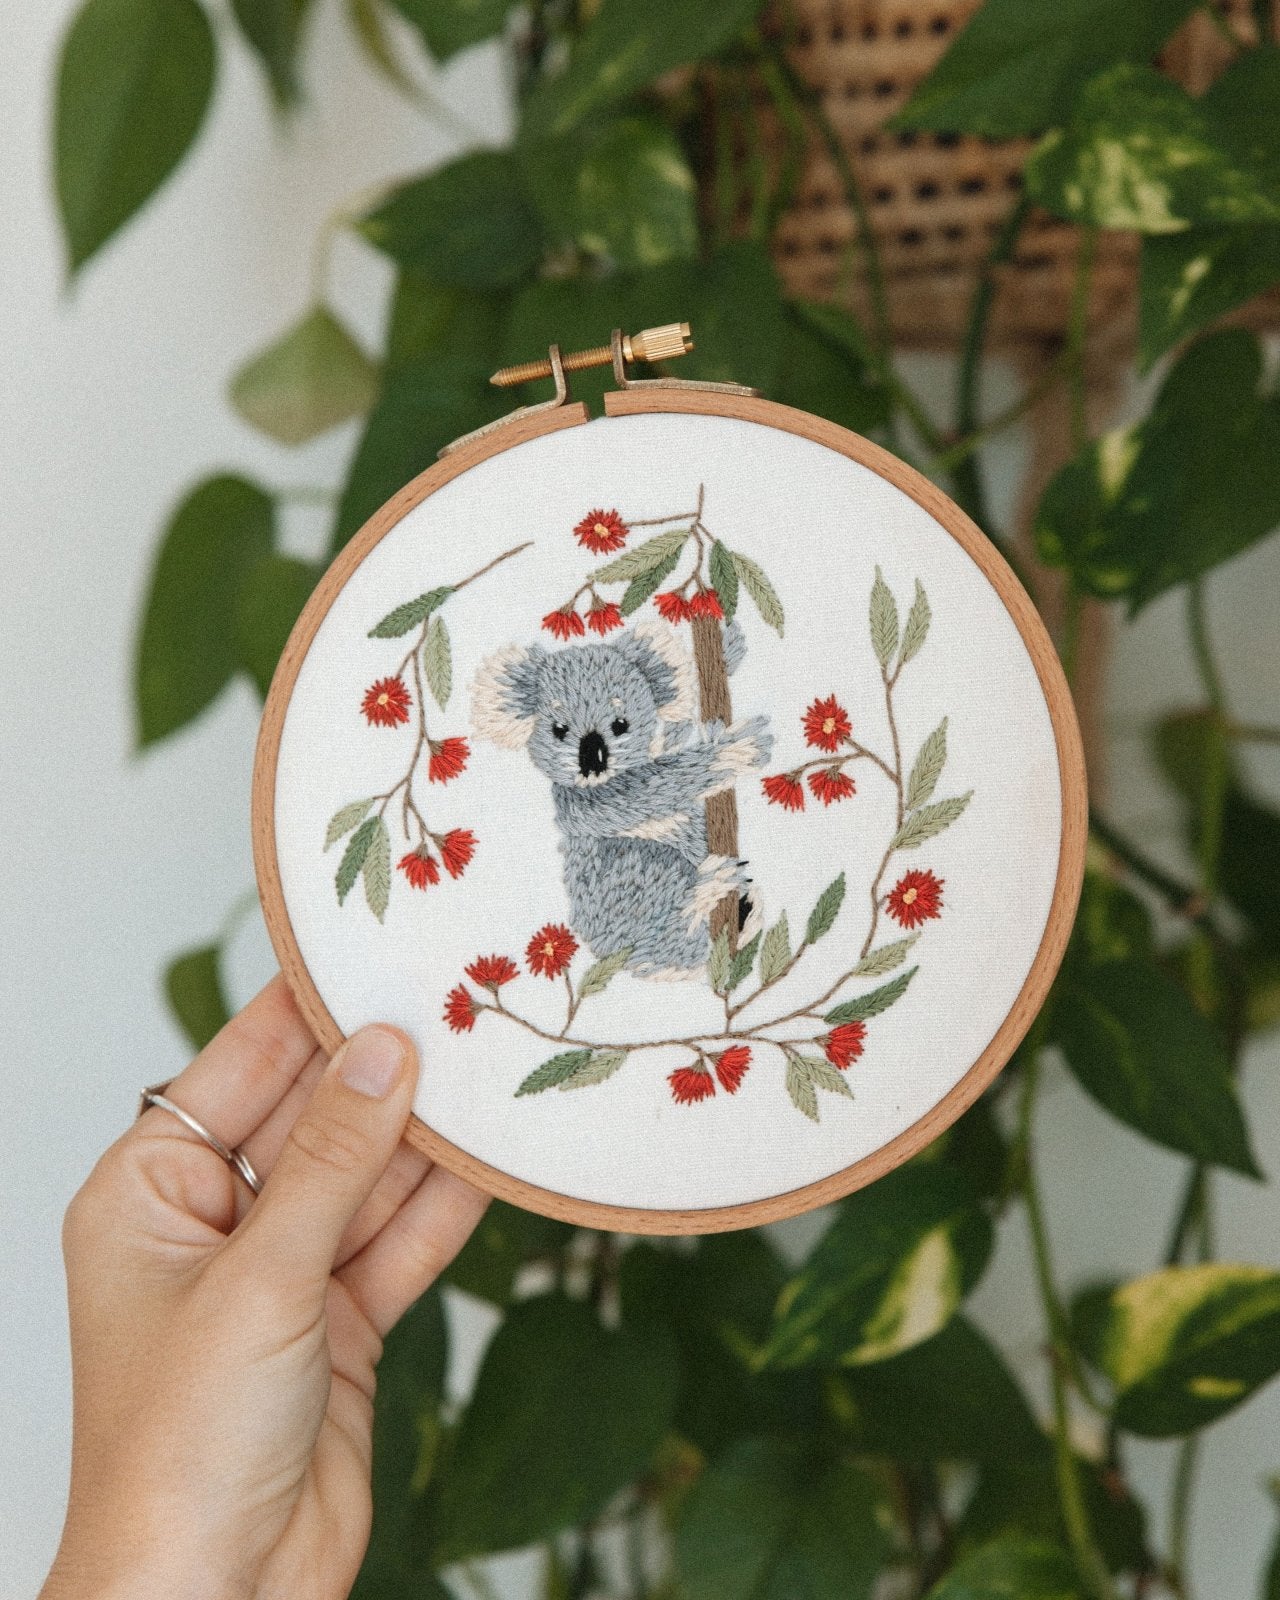 Baby Koala Embroidery Kit - Stitched Up Kits